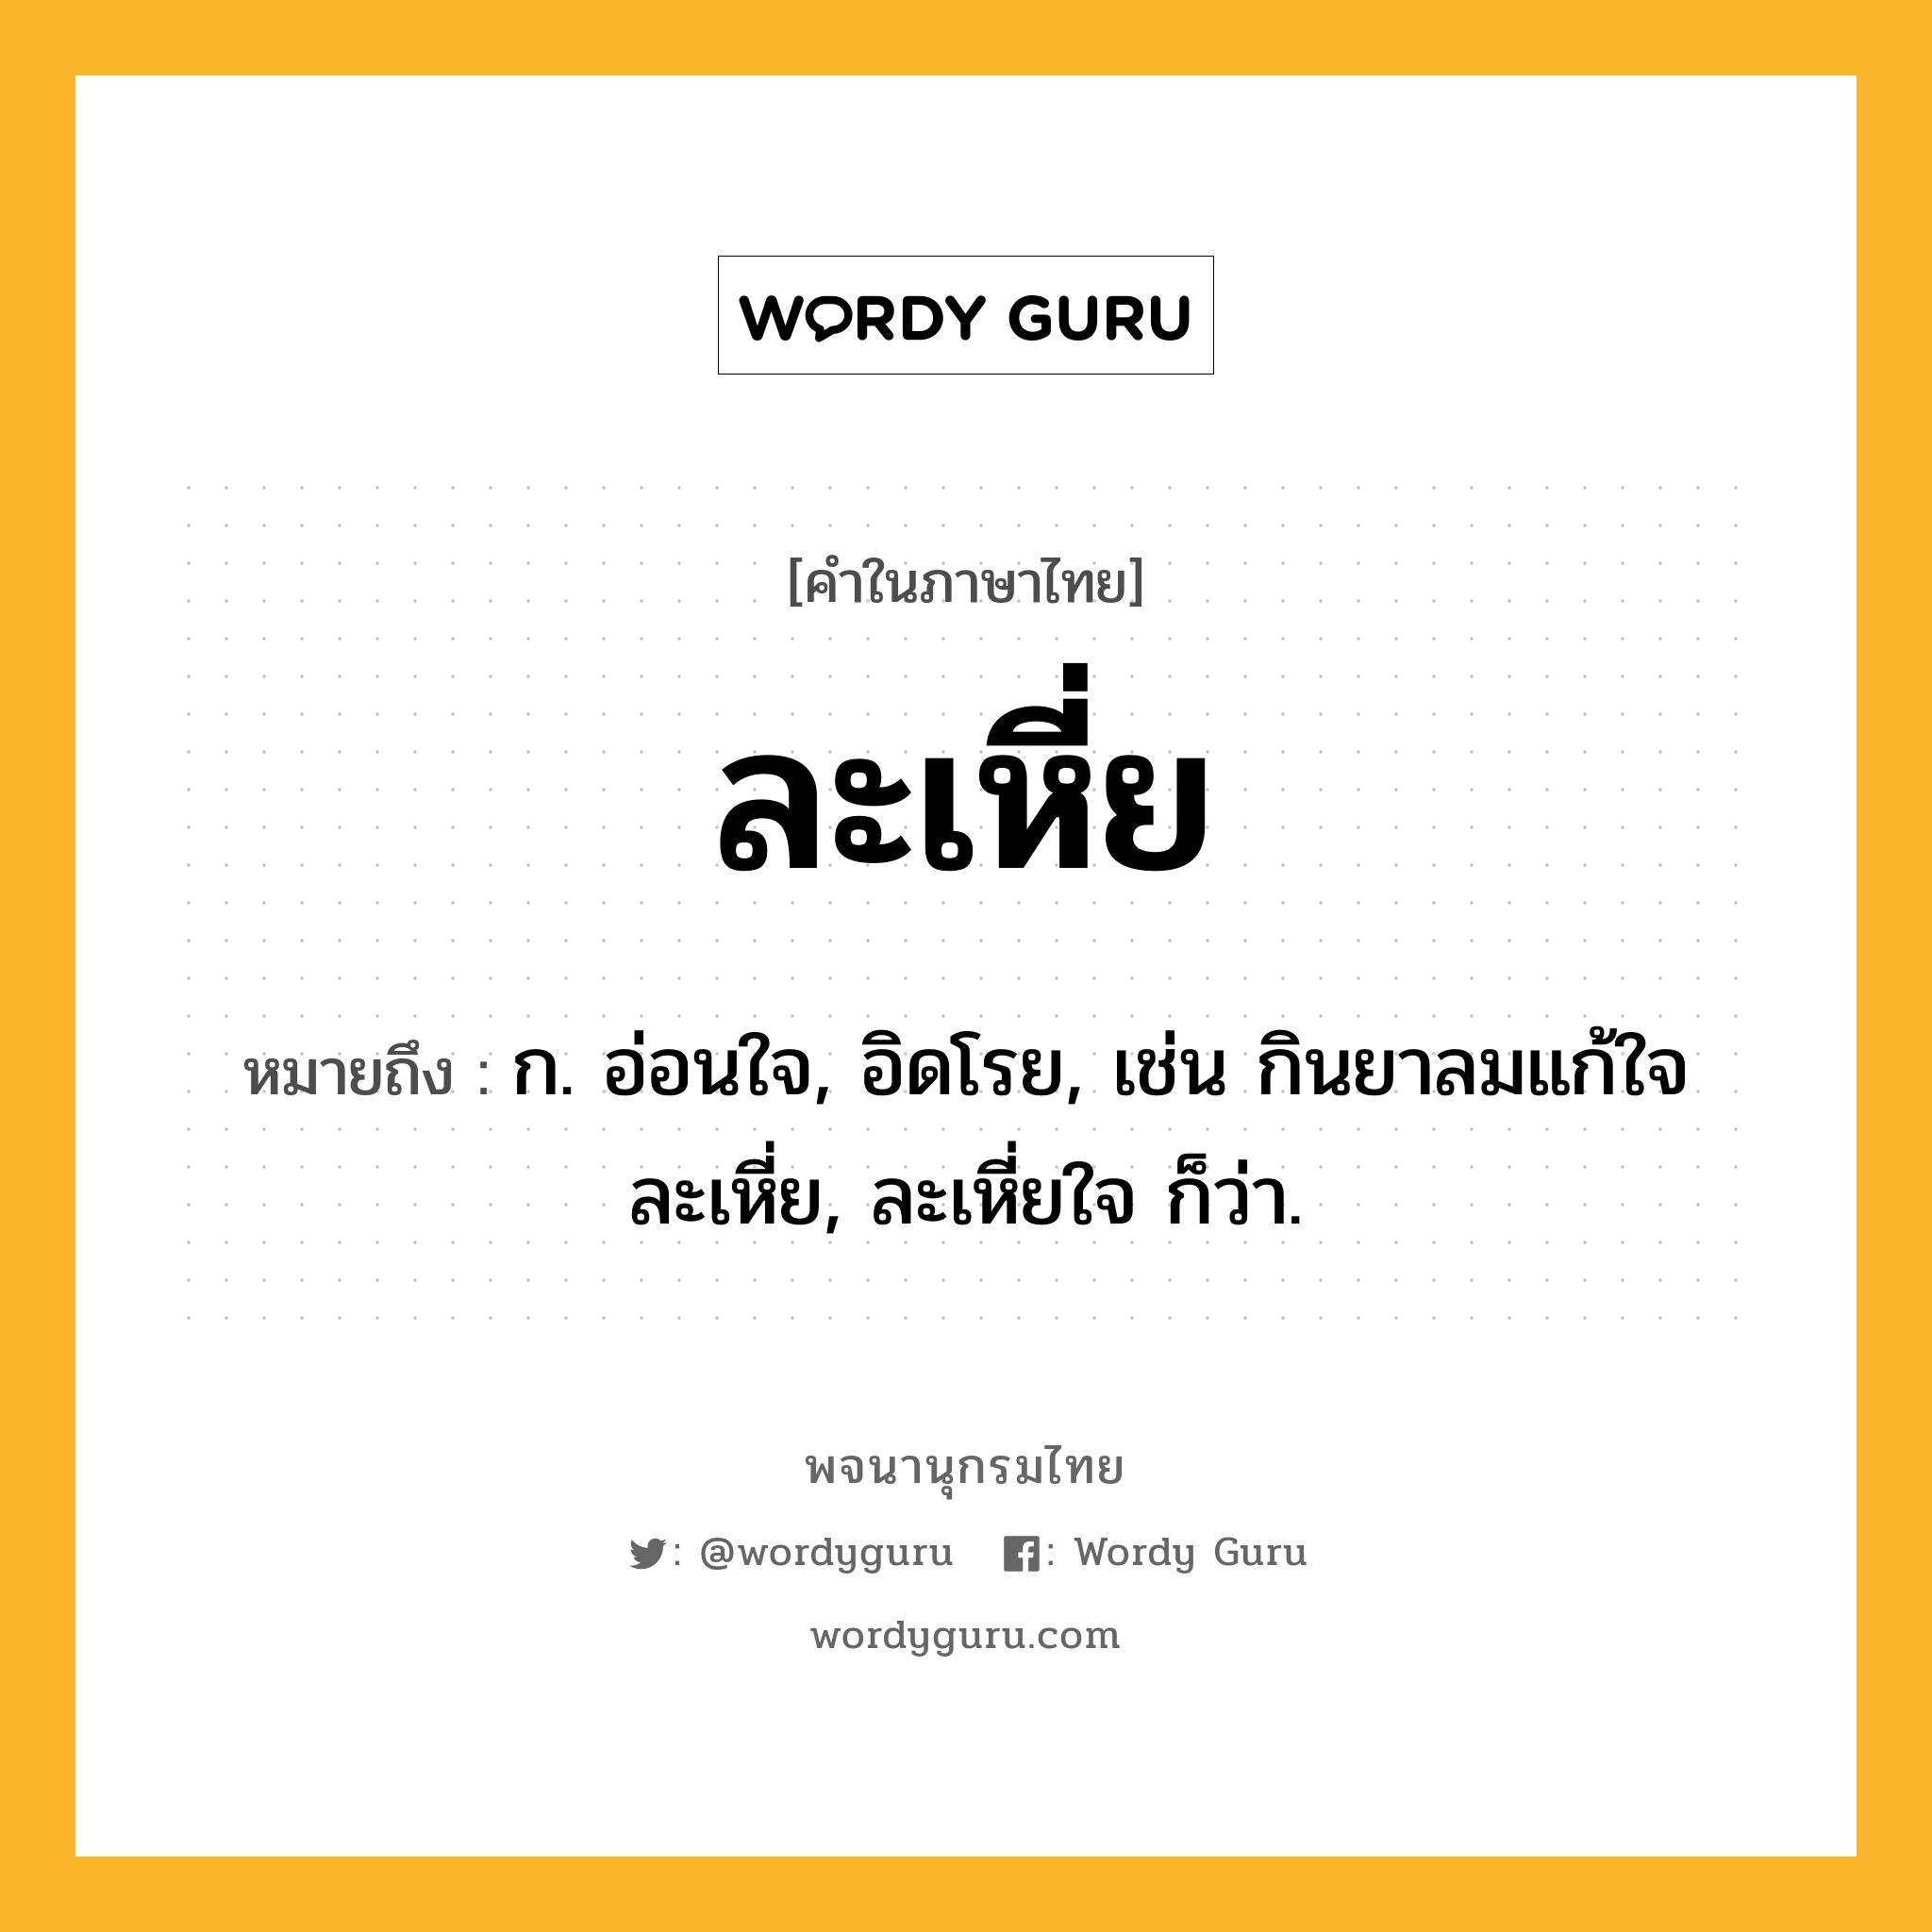 ละเหี่ย ความหมาย หมายถึงอะไร?, คำในภาษาไทย ละเหี่ย หมายถึง ก. อ่อนใจ, อิดโรย, เช่น กินยาลมแก้ใจละเหี่ย, ละเหี่ยใจ ก็ว่า.